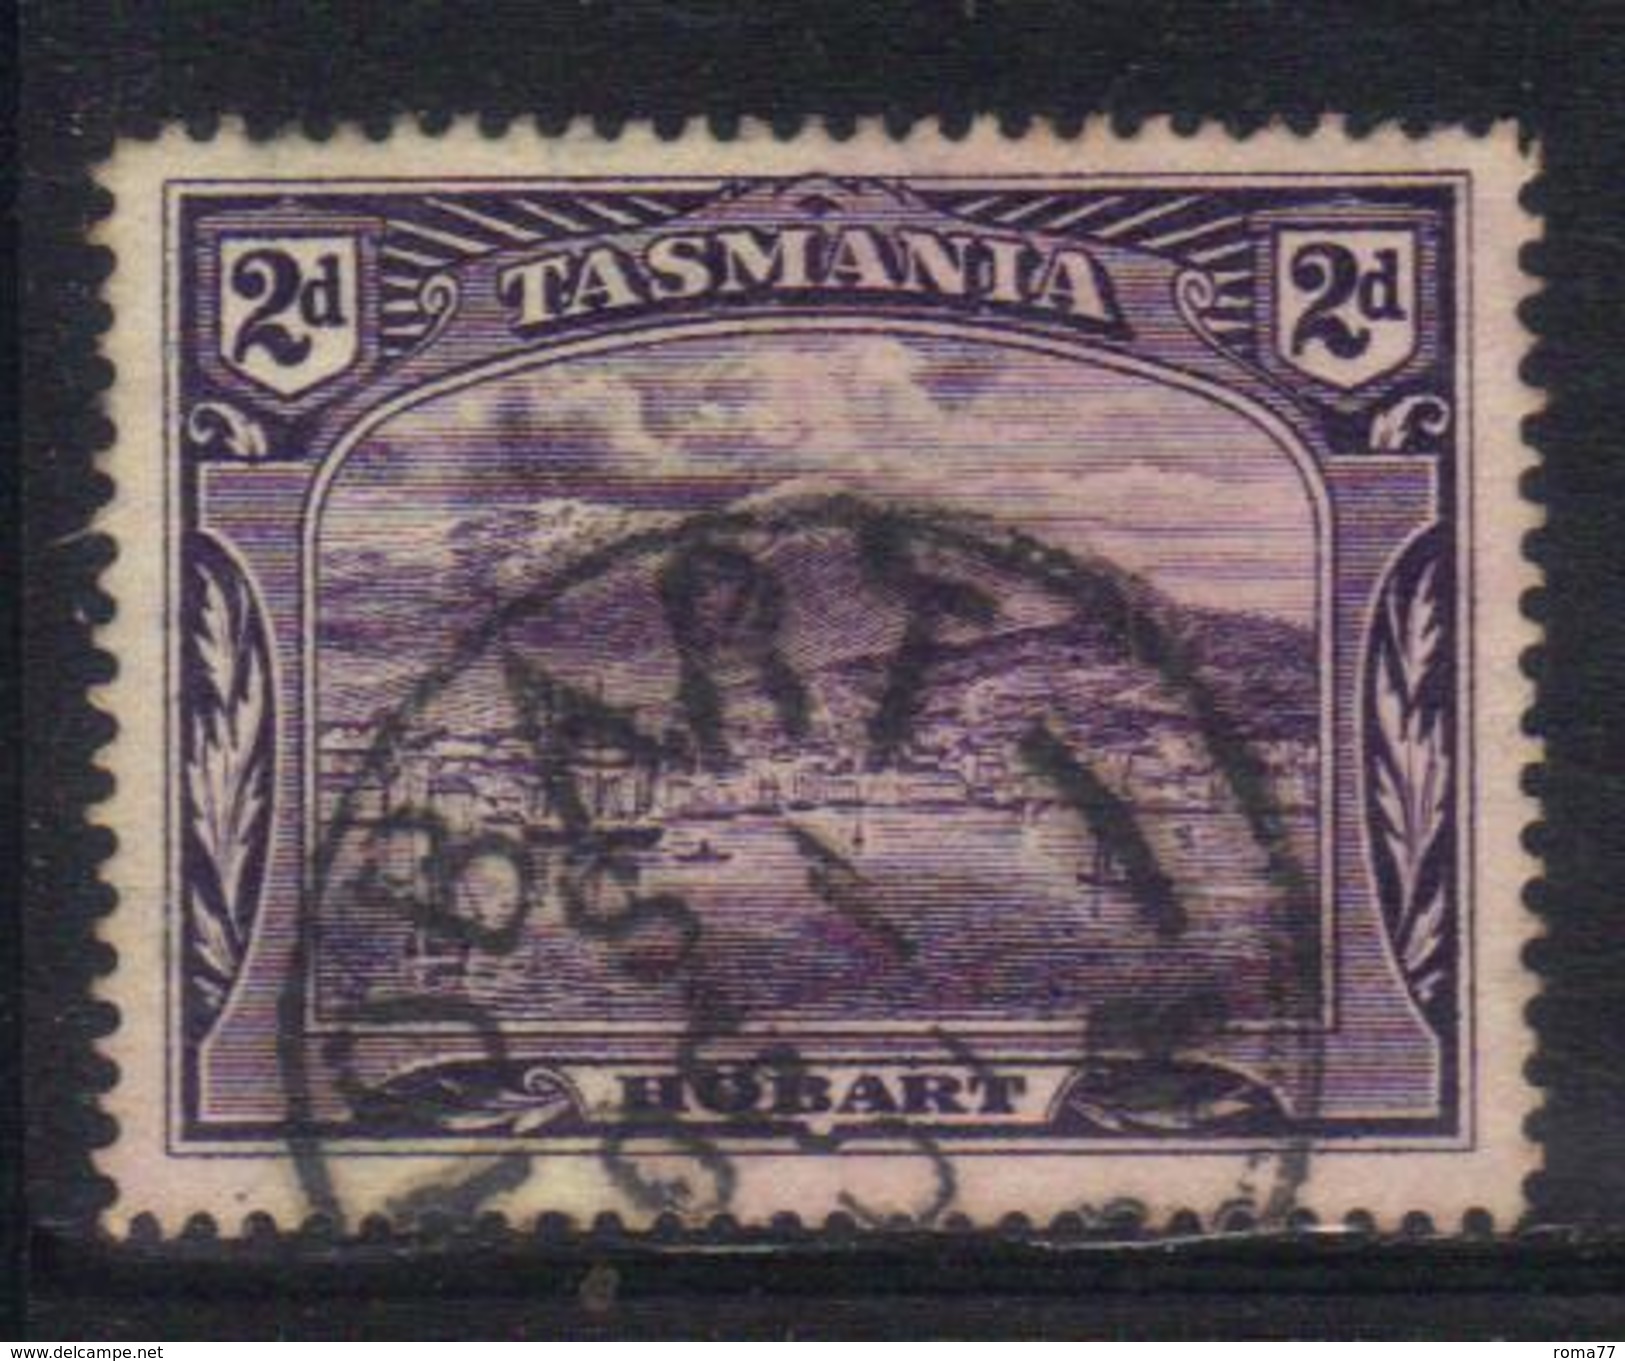 T1903 - TASMANIA 2 Pence Wmk TAS Used - Used Stamps